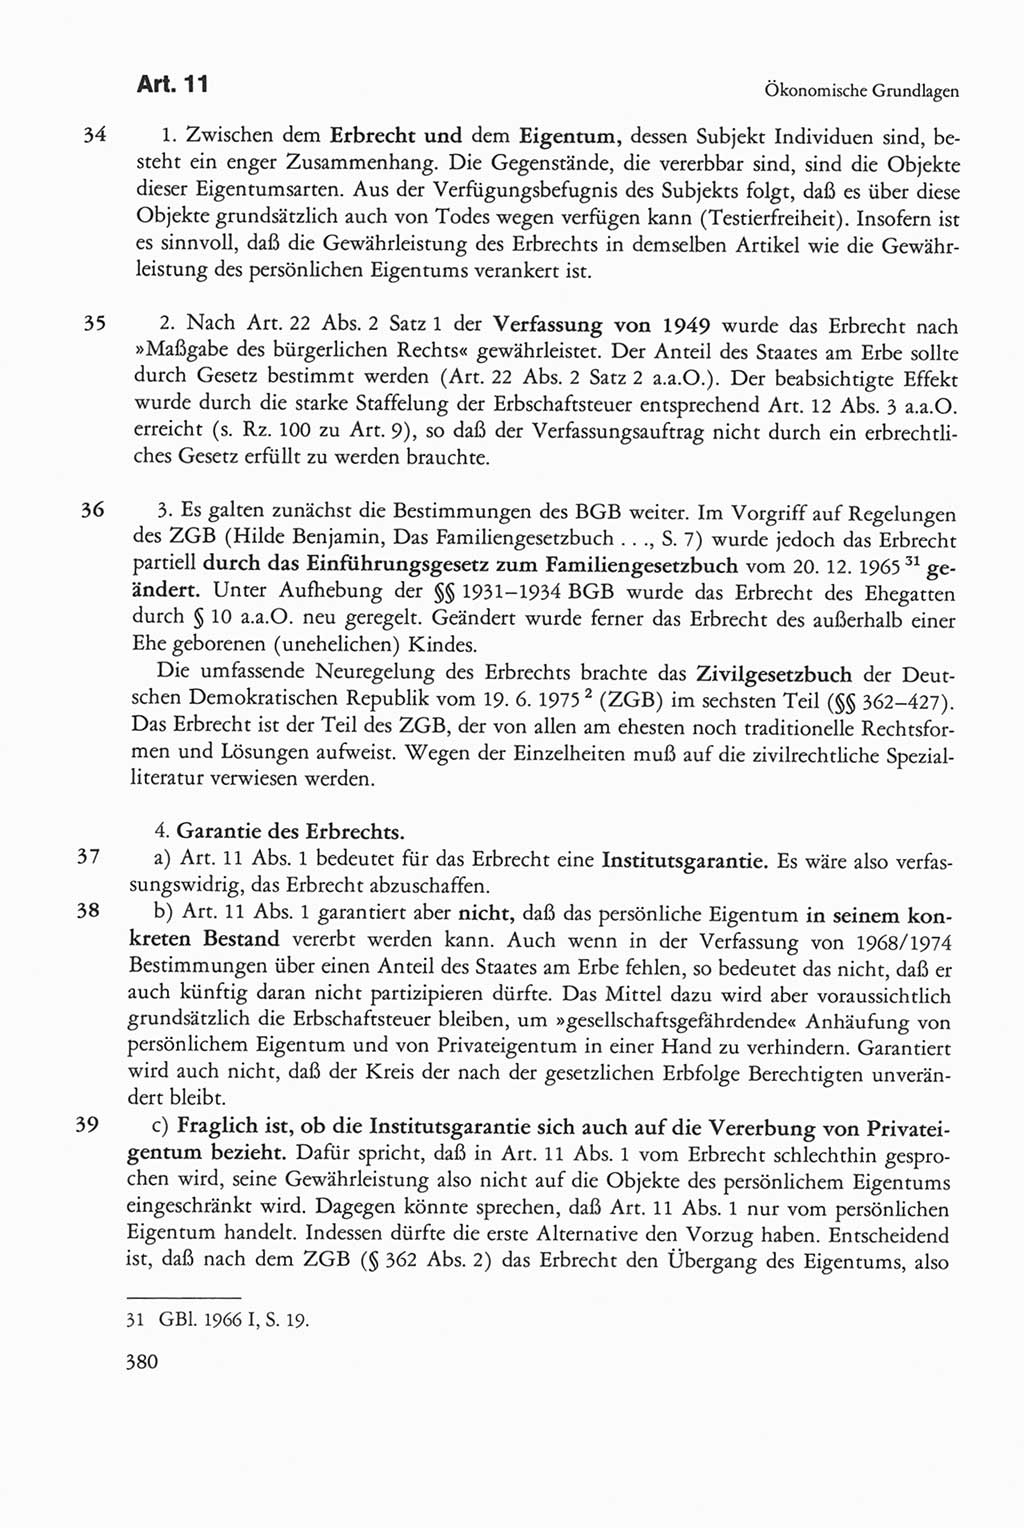 Die sozialistische Verfassung der Deutschen Demokratischen Republik (DDR), Kommentar mit einem Nachtrag 1997, Seite 380 (Soz. Verf. DDR Komm. Nachtr. 1997, S. 380)